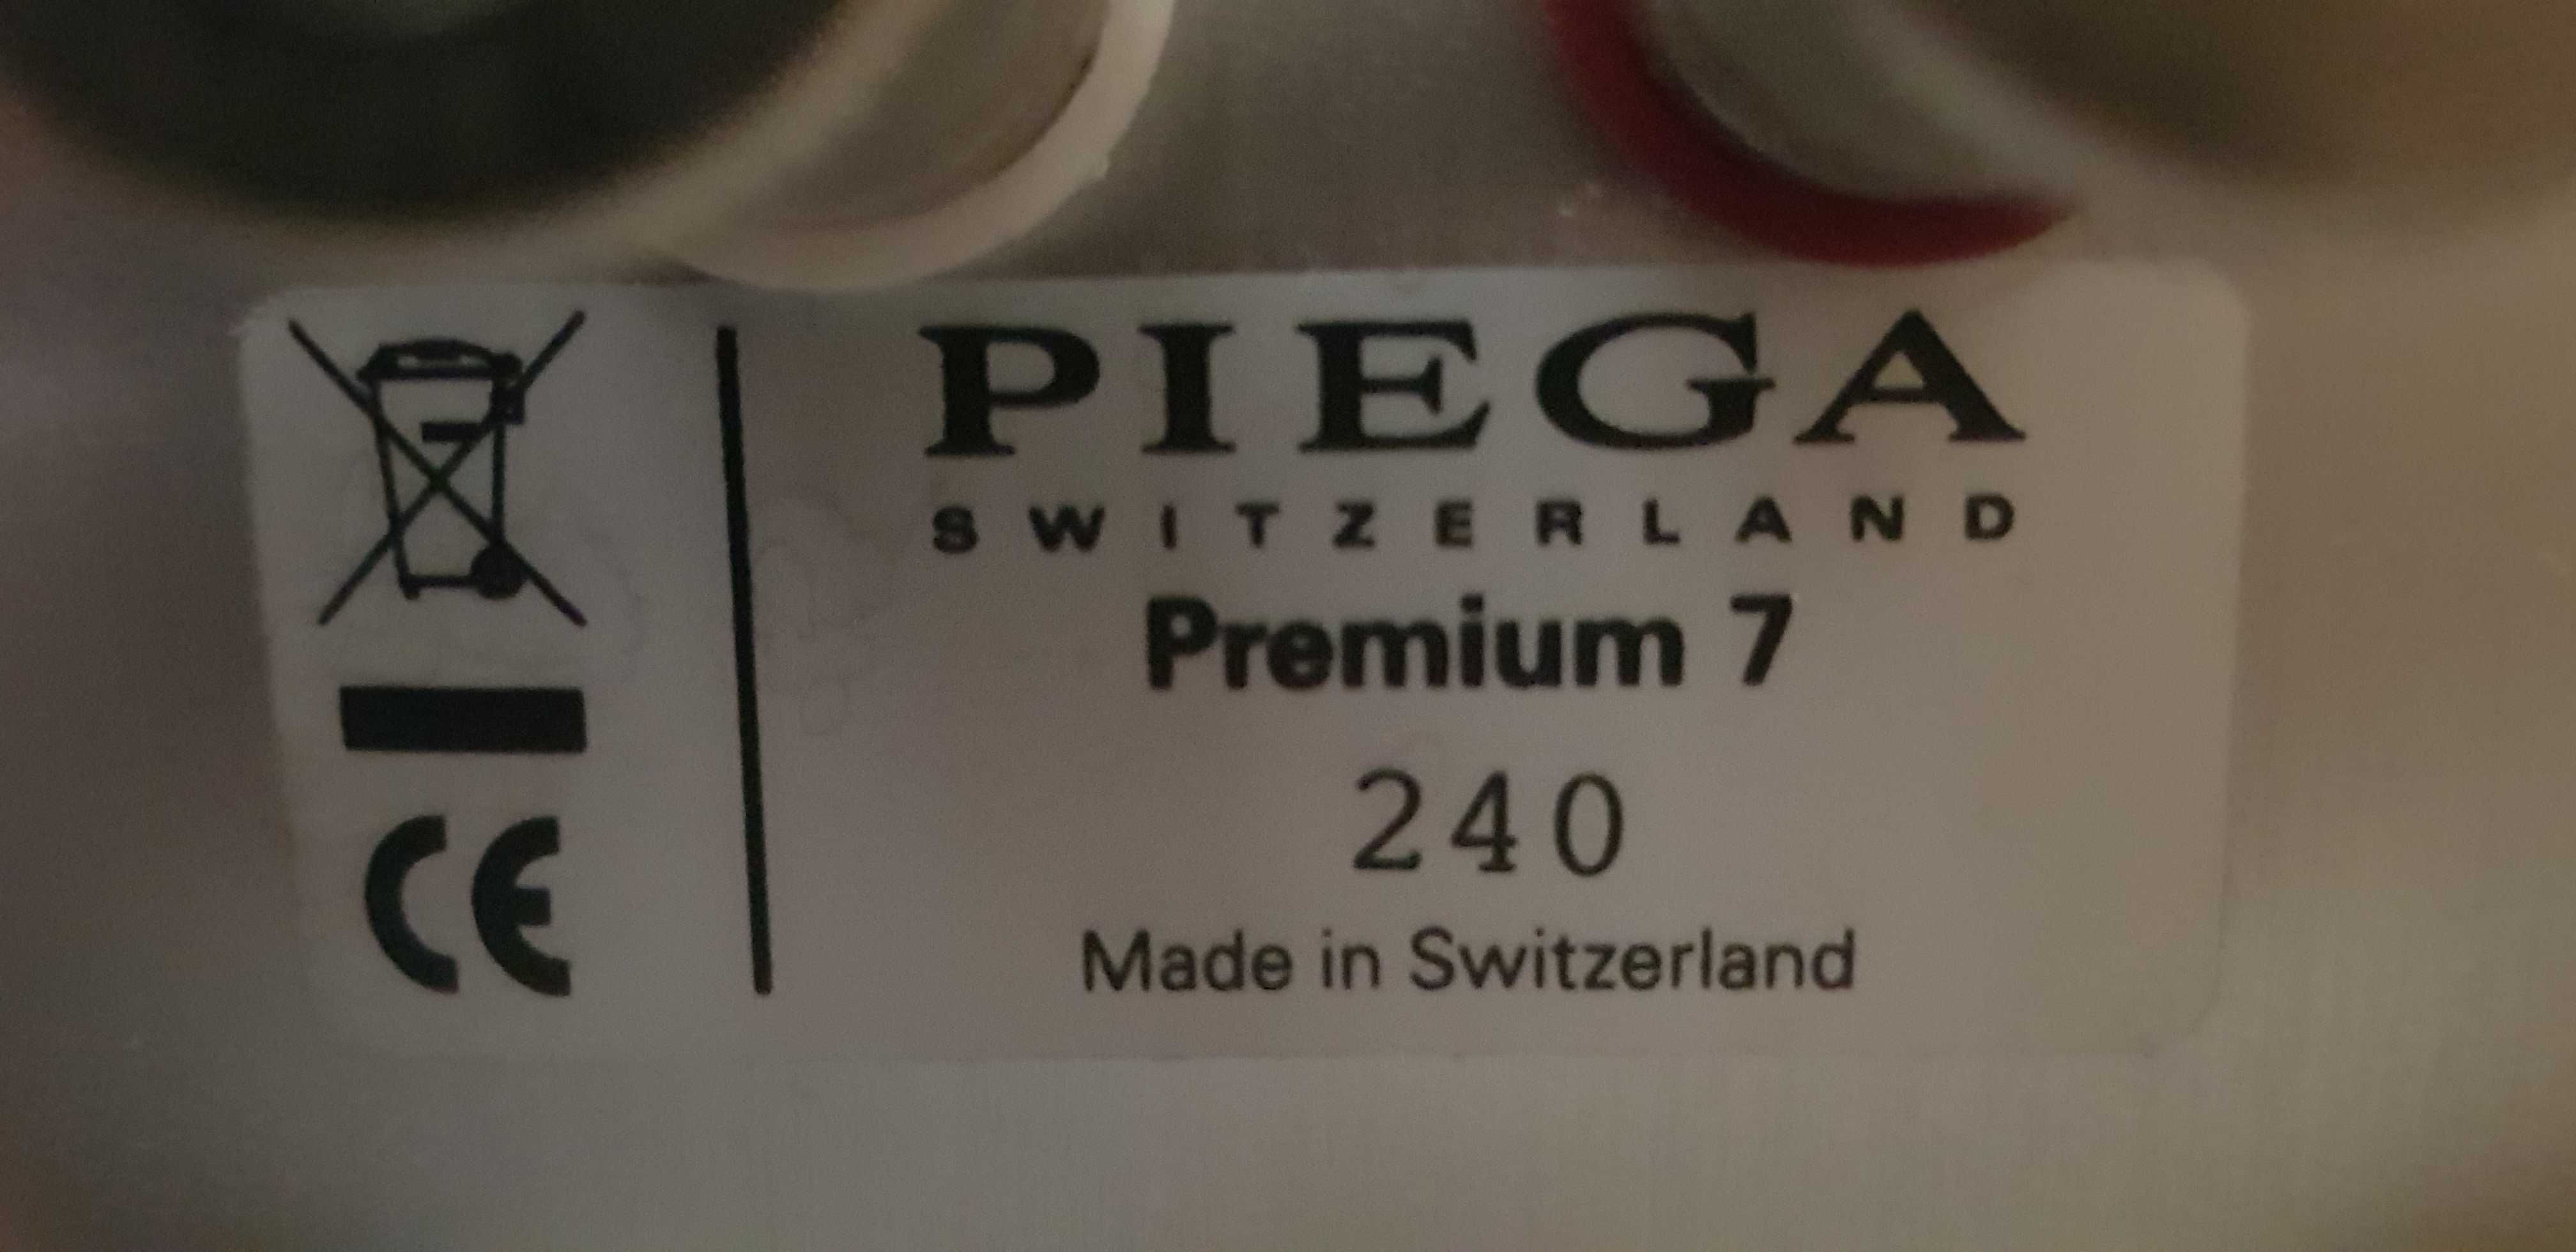 Boxe PIEGA Premium 7 / TP7 - Swiss made